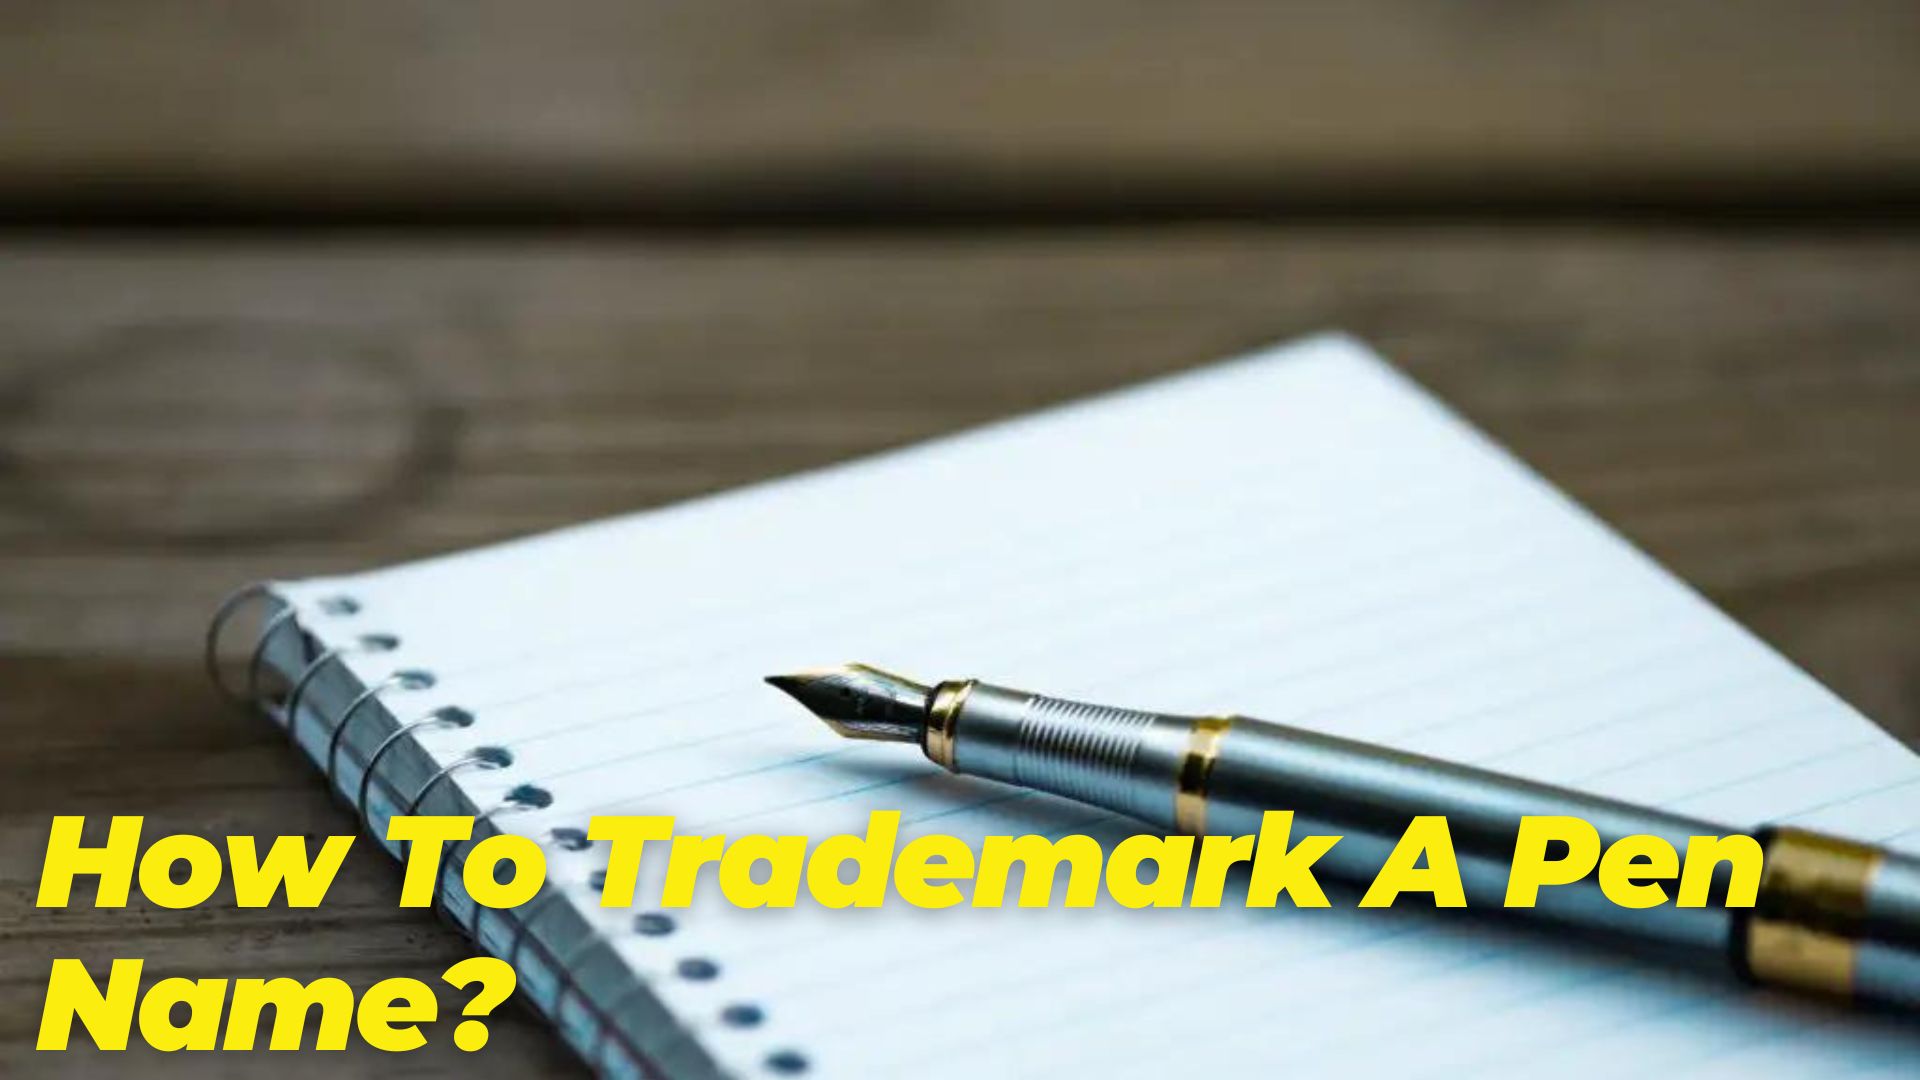 How To Trademark A Pen Name?